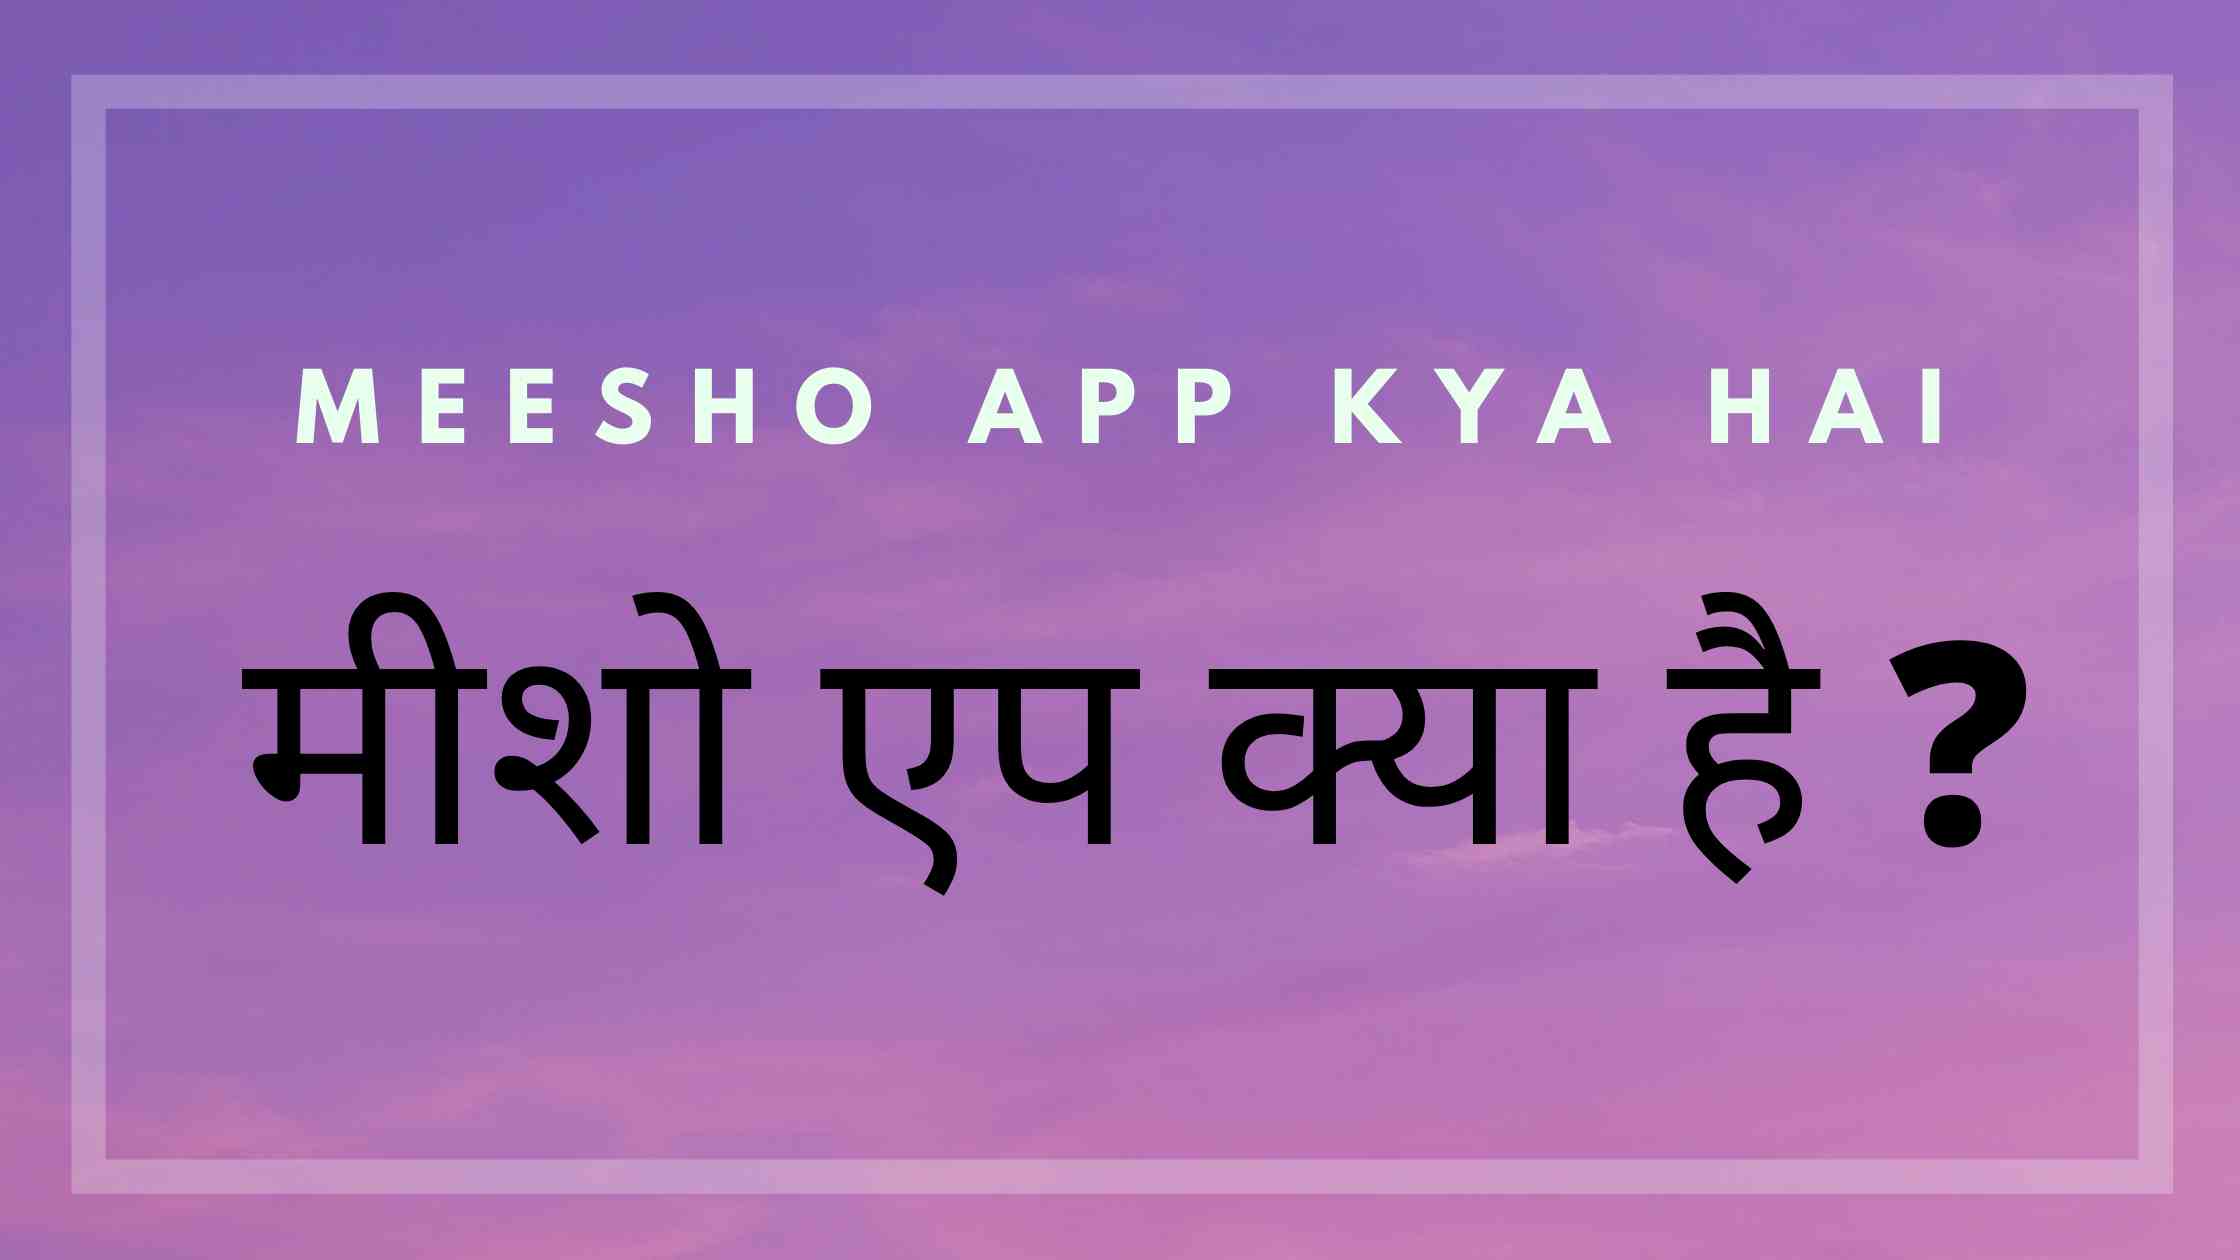 what is meesho app in hindi - meesho app kya hai